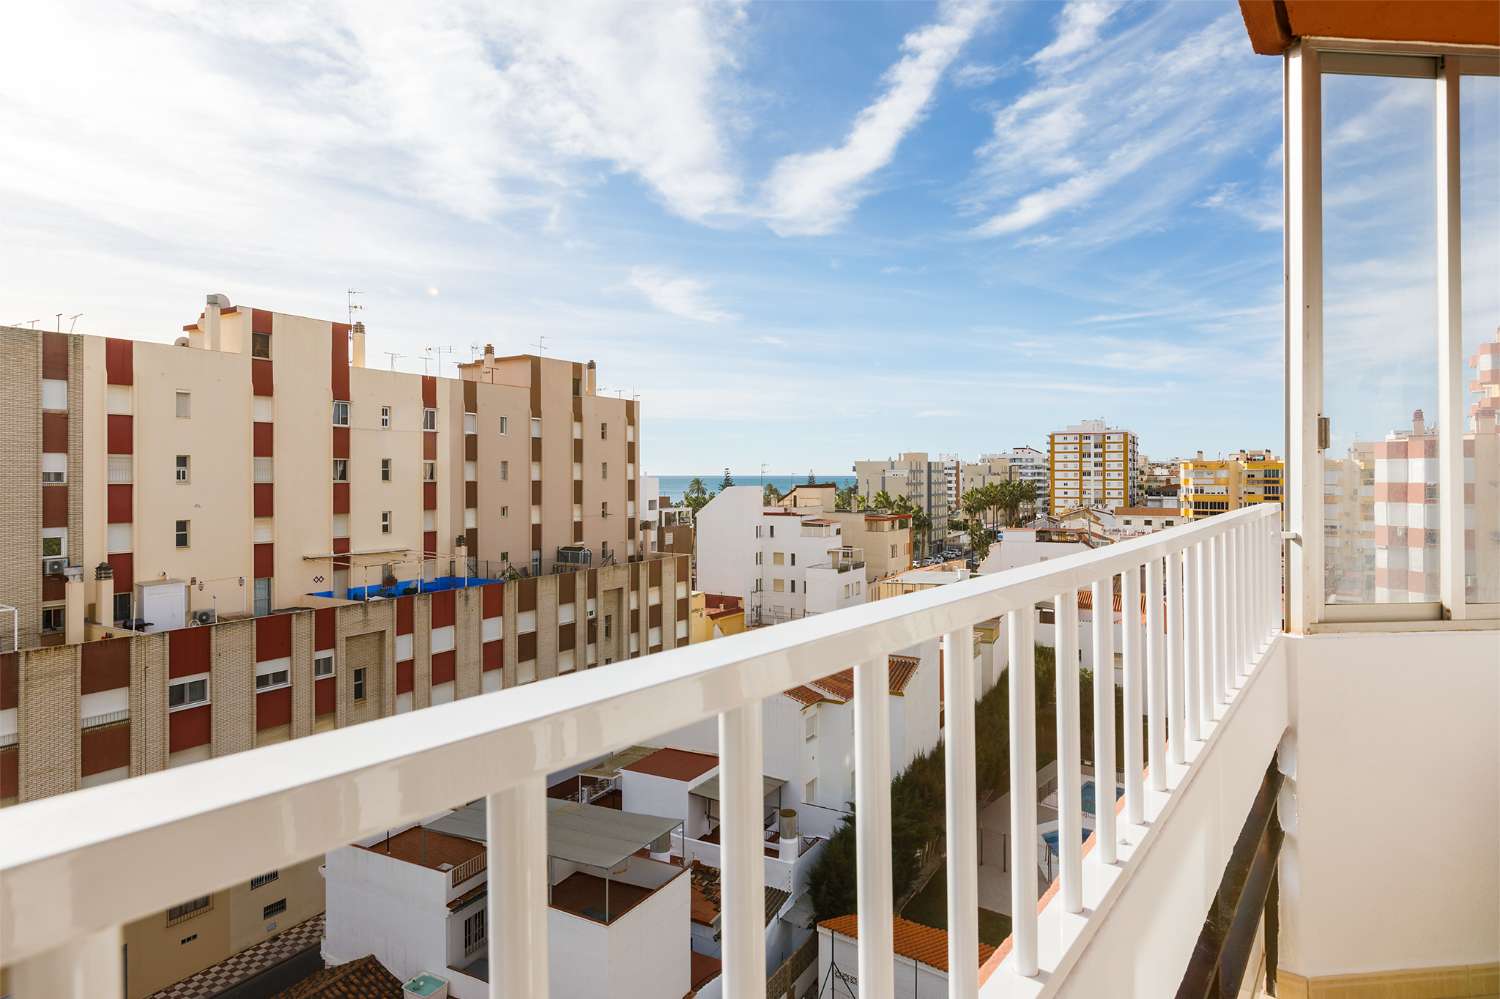 Appartement avec deux chambres, deux salles de bain au centre de Torre del Mar, disponible en hiver